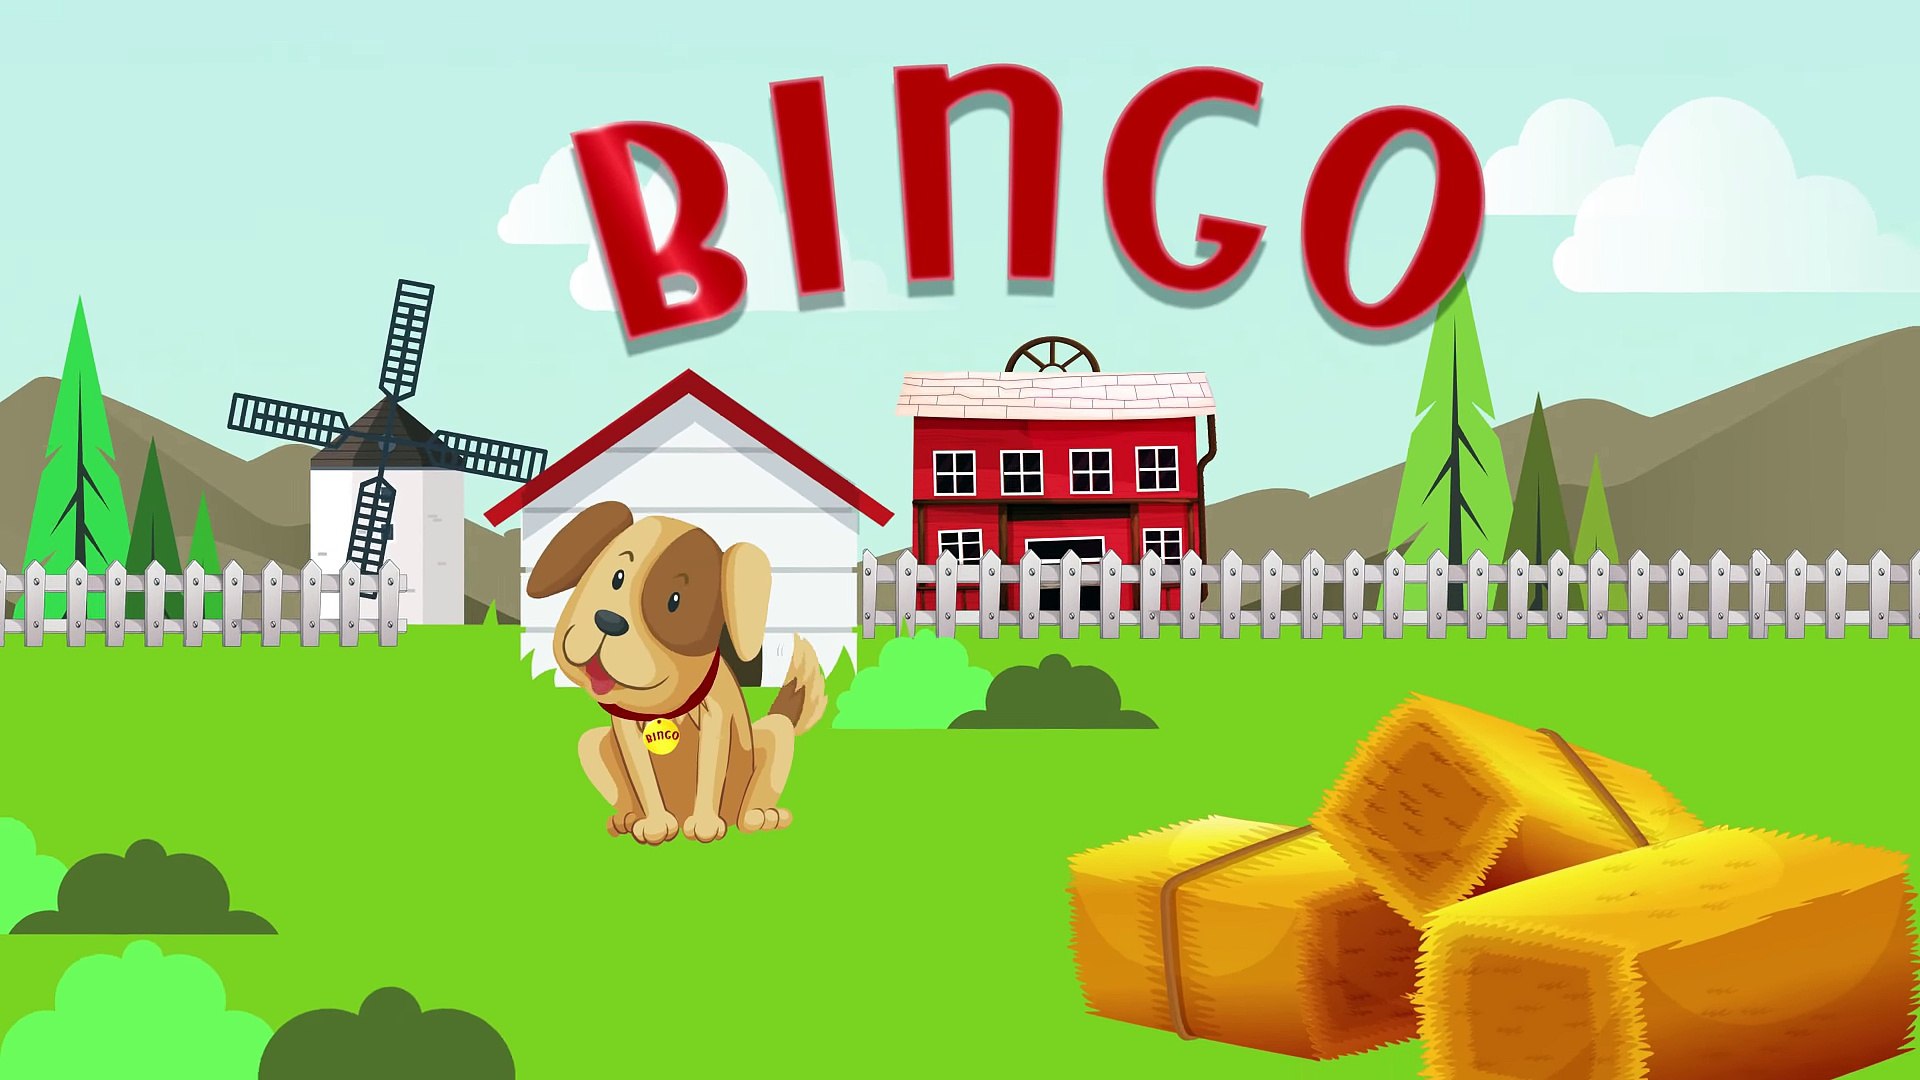 Bingo | Nursery Rhymes | Bingo Rhymes For Children by Doo Doo Kids Songs -  Dailymotion Video